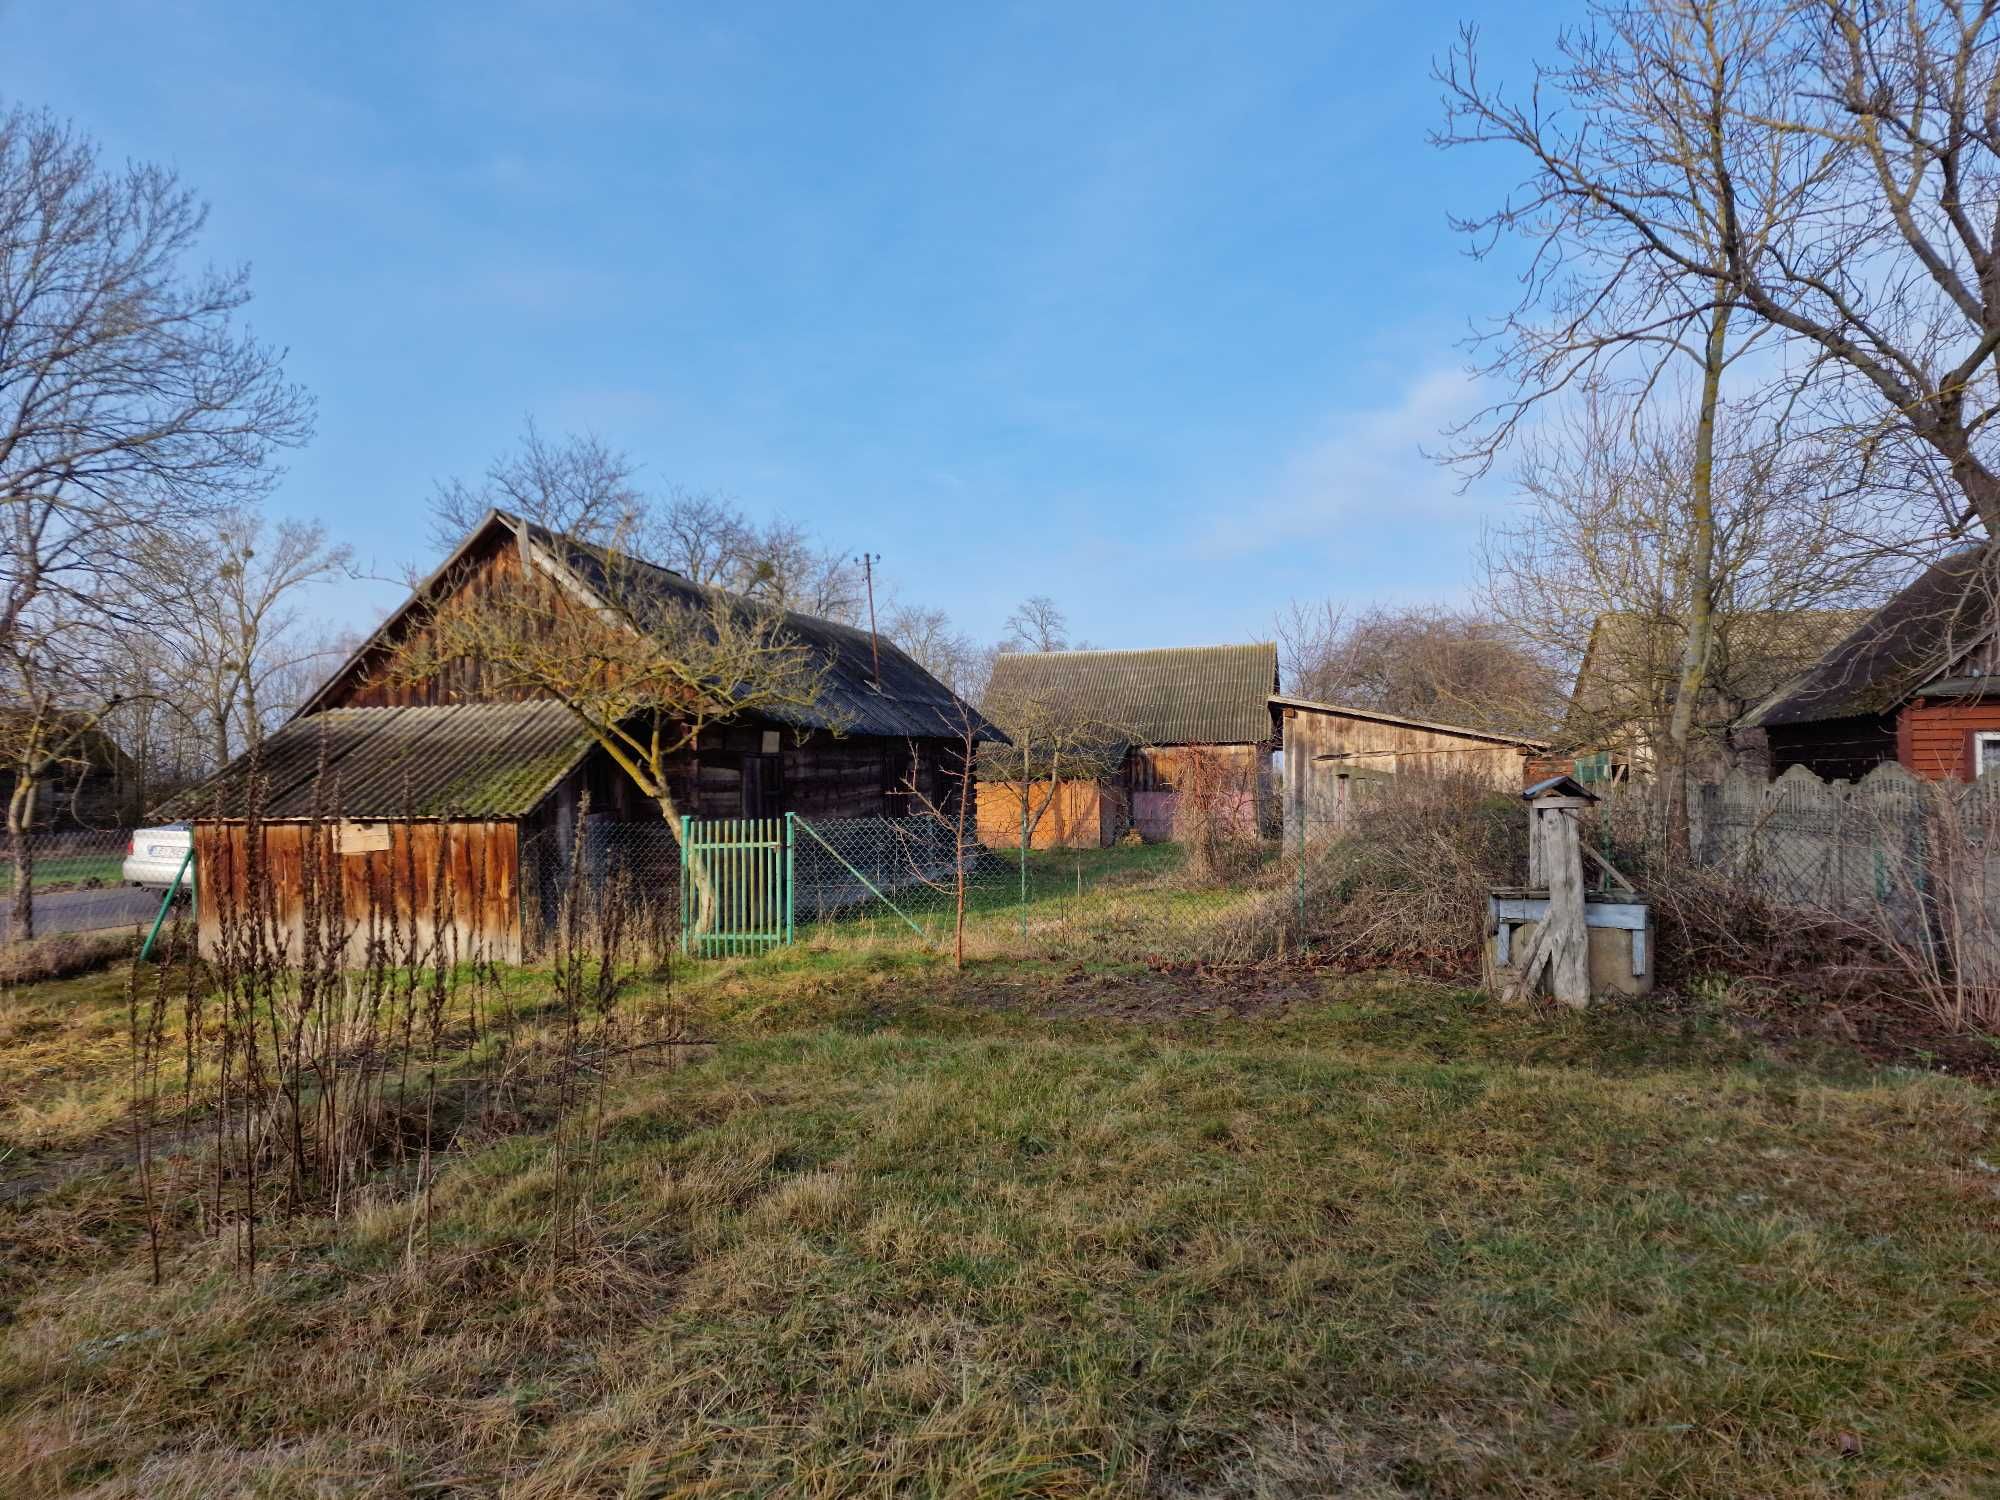 Dom, siedlisko wieś Korczówka, gmina Łomazy, lubelskie